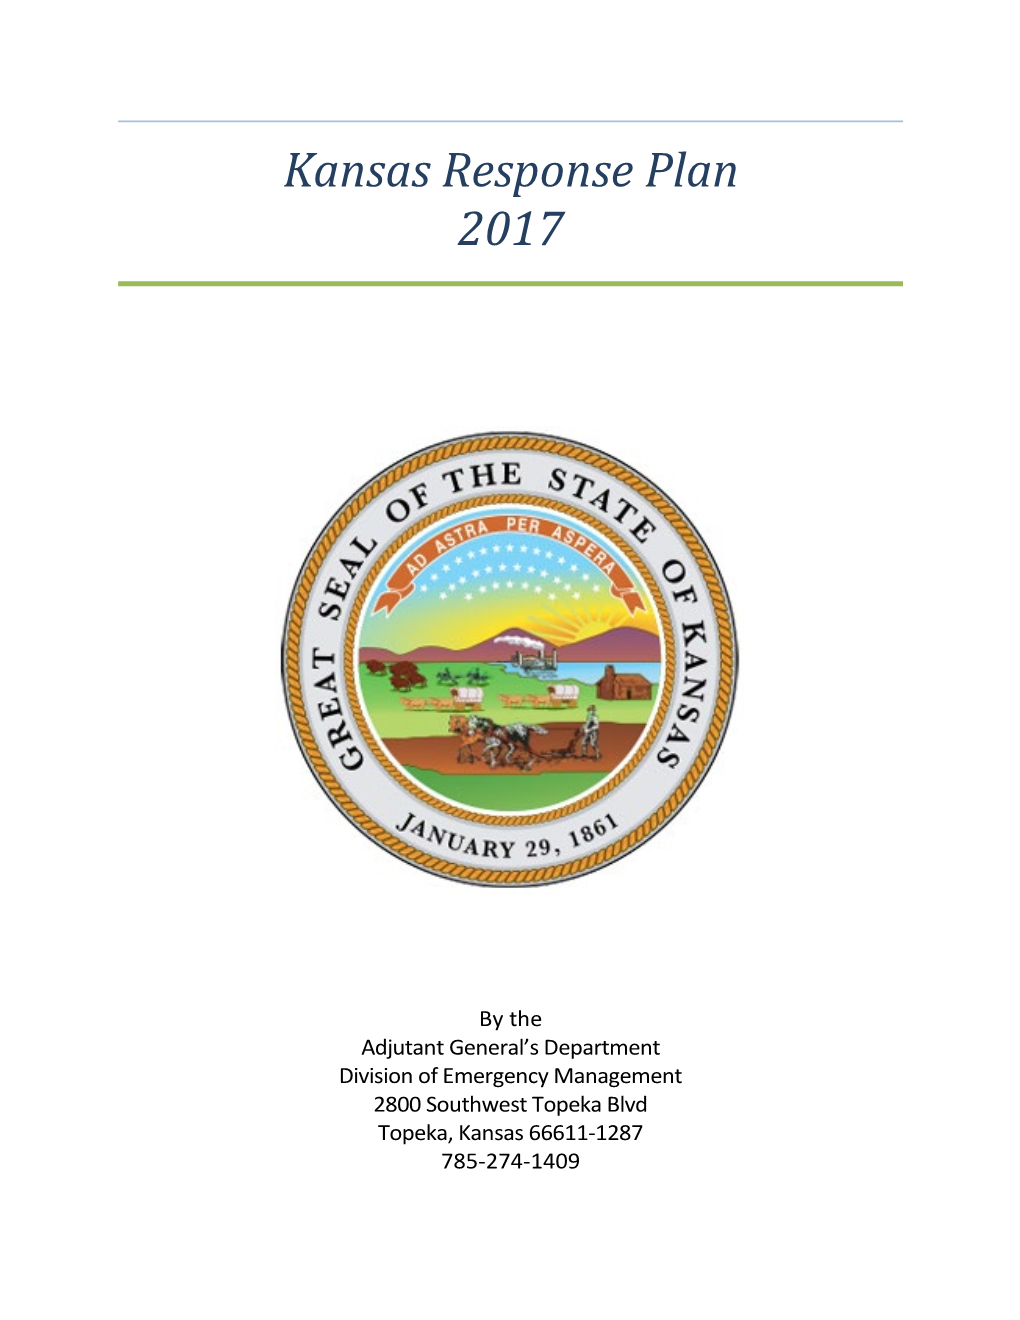 Kansas Response Plan 2017